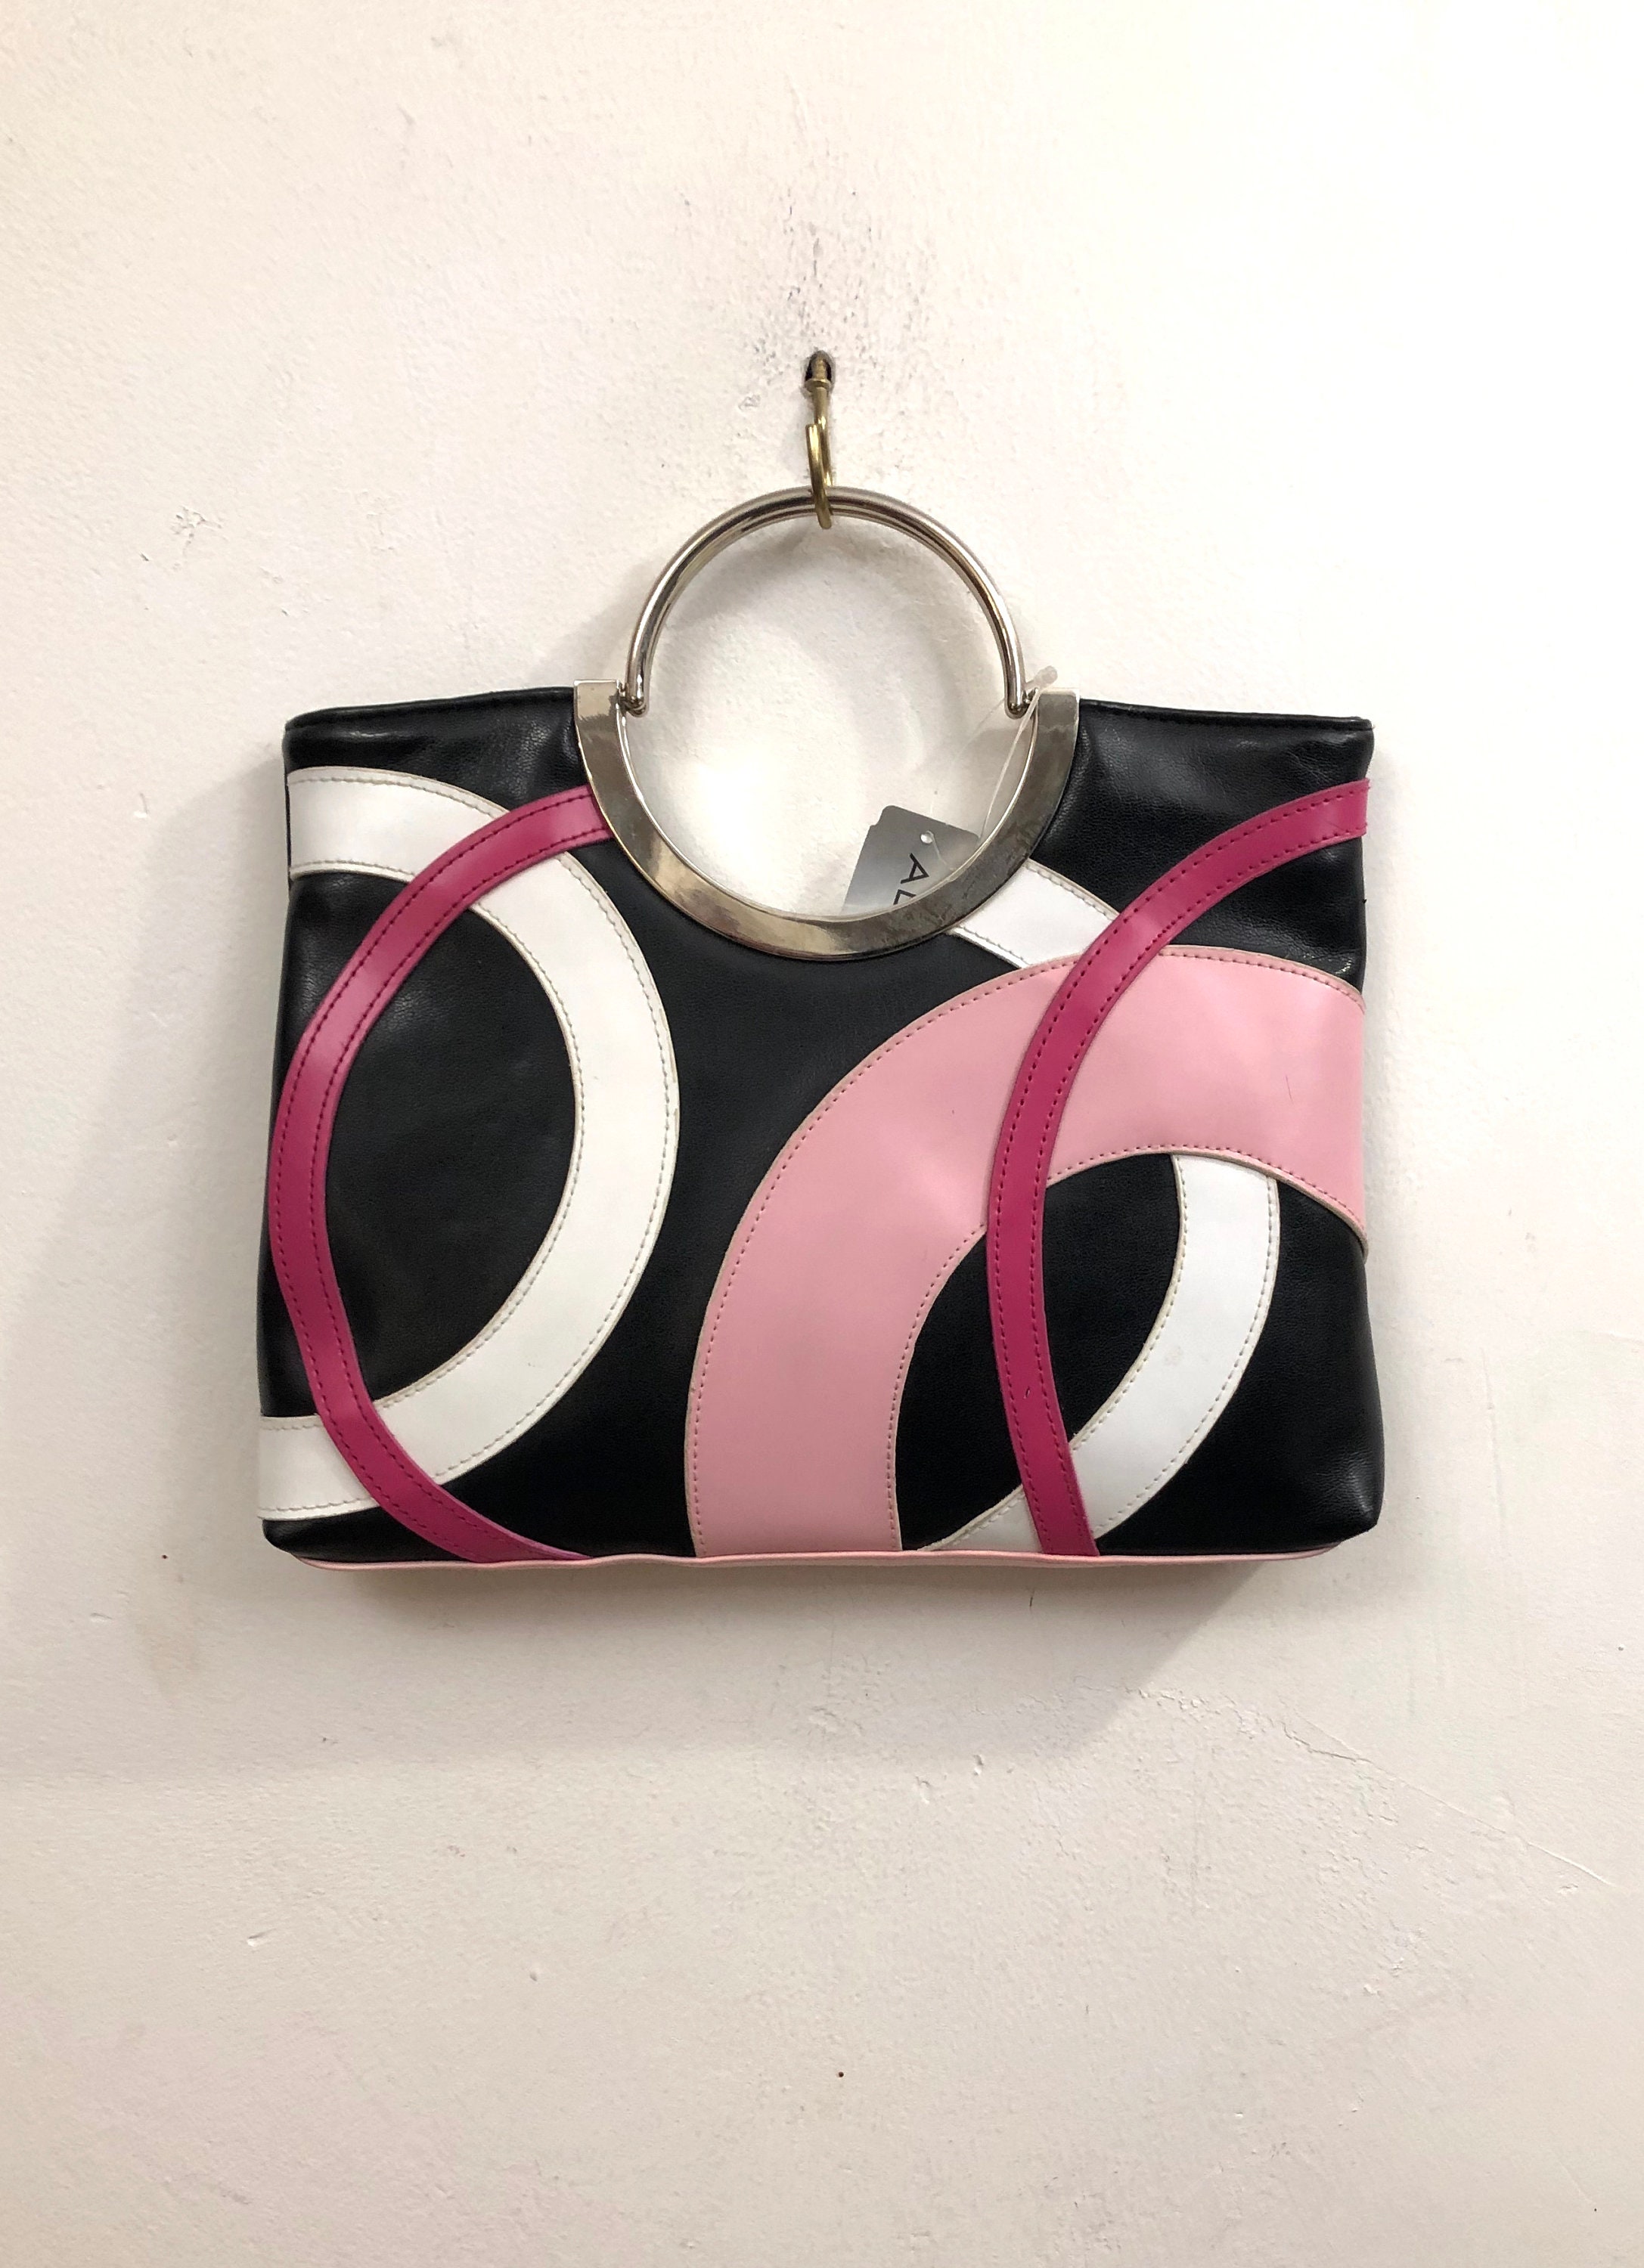 Aldo A Black Leatherette Art Deco Inspired Bag of Magenta Pink 